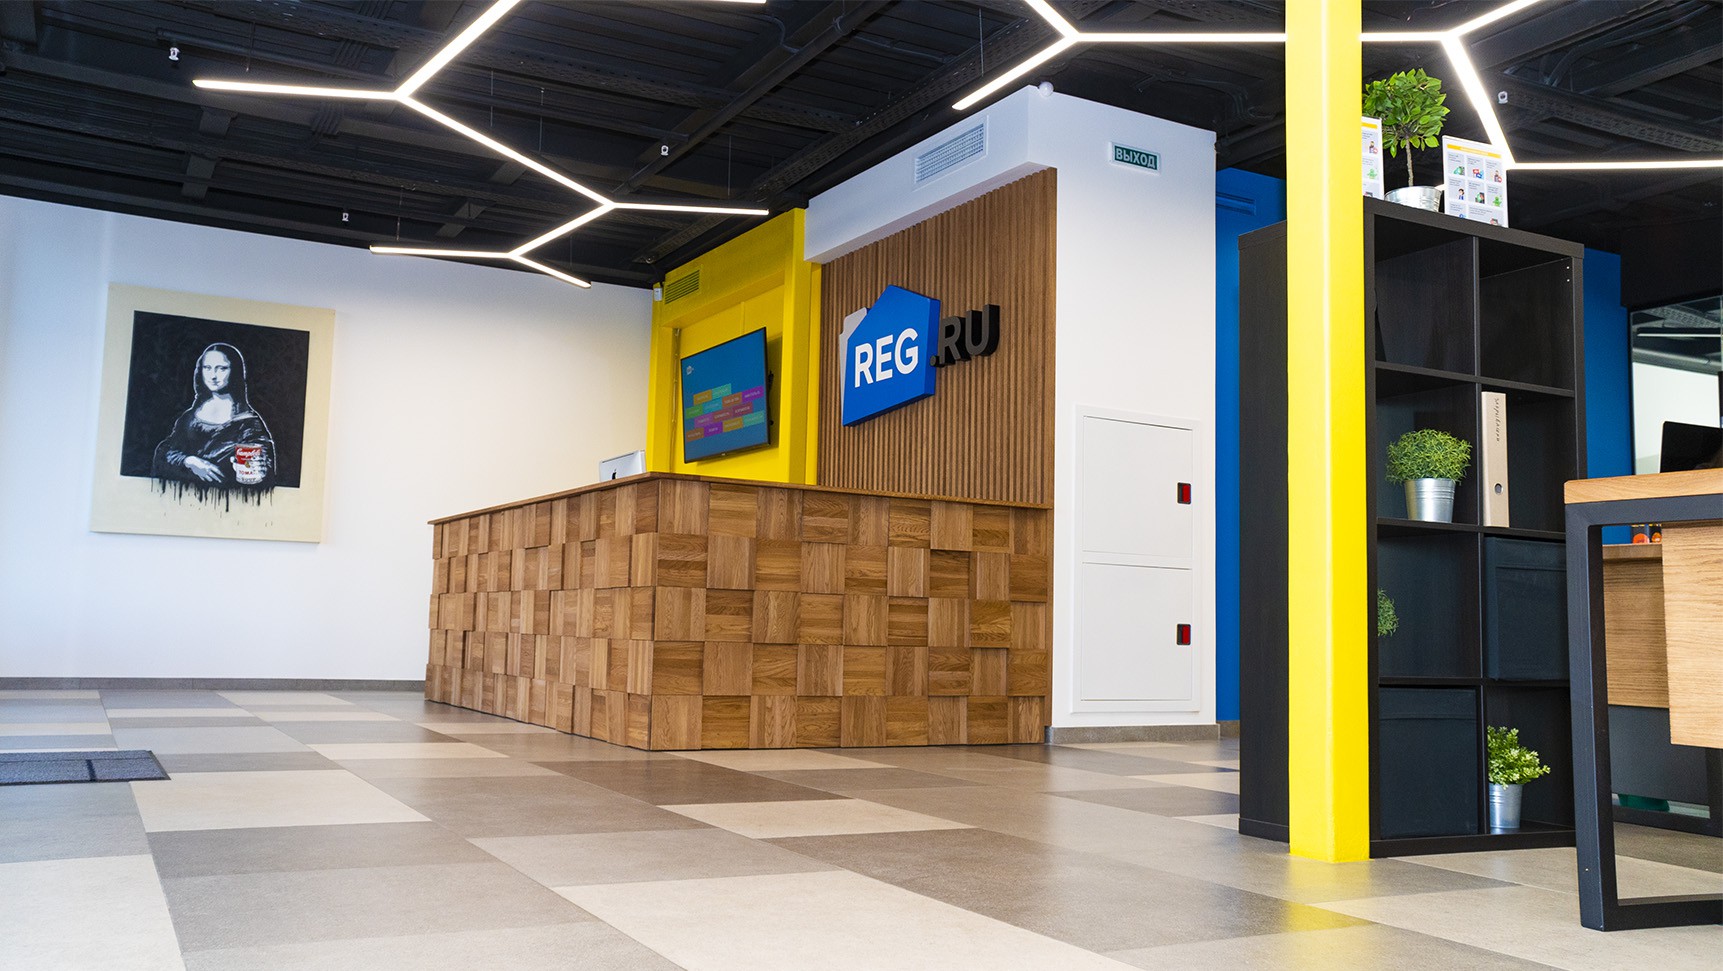 Появилась концепция «REG.RU как точка выхода бизнеса в сеть»